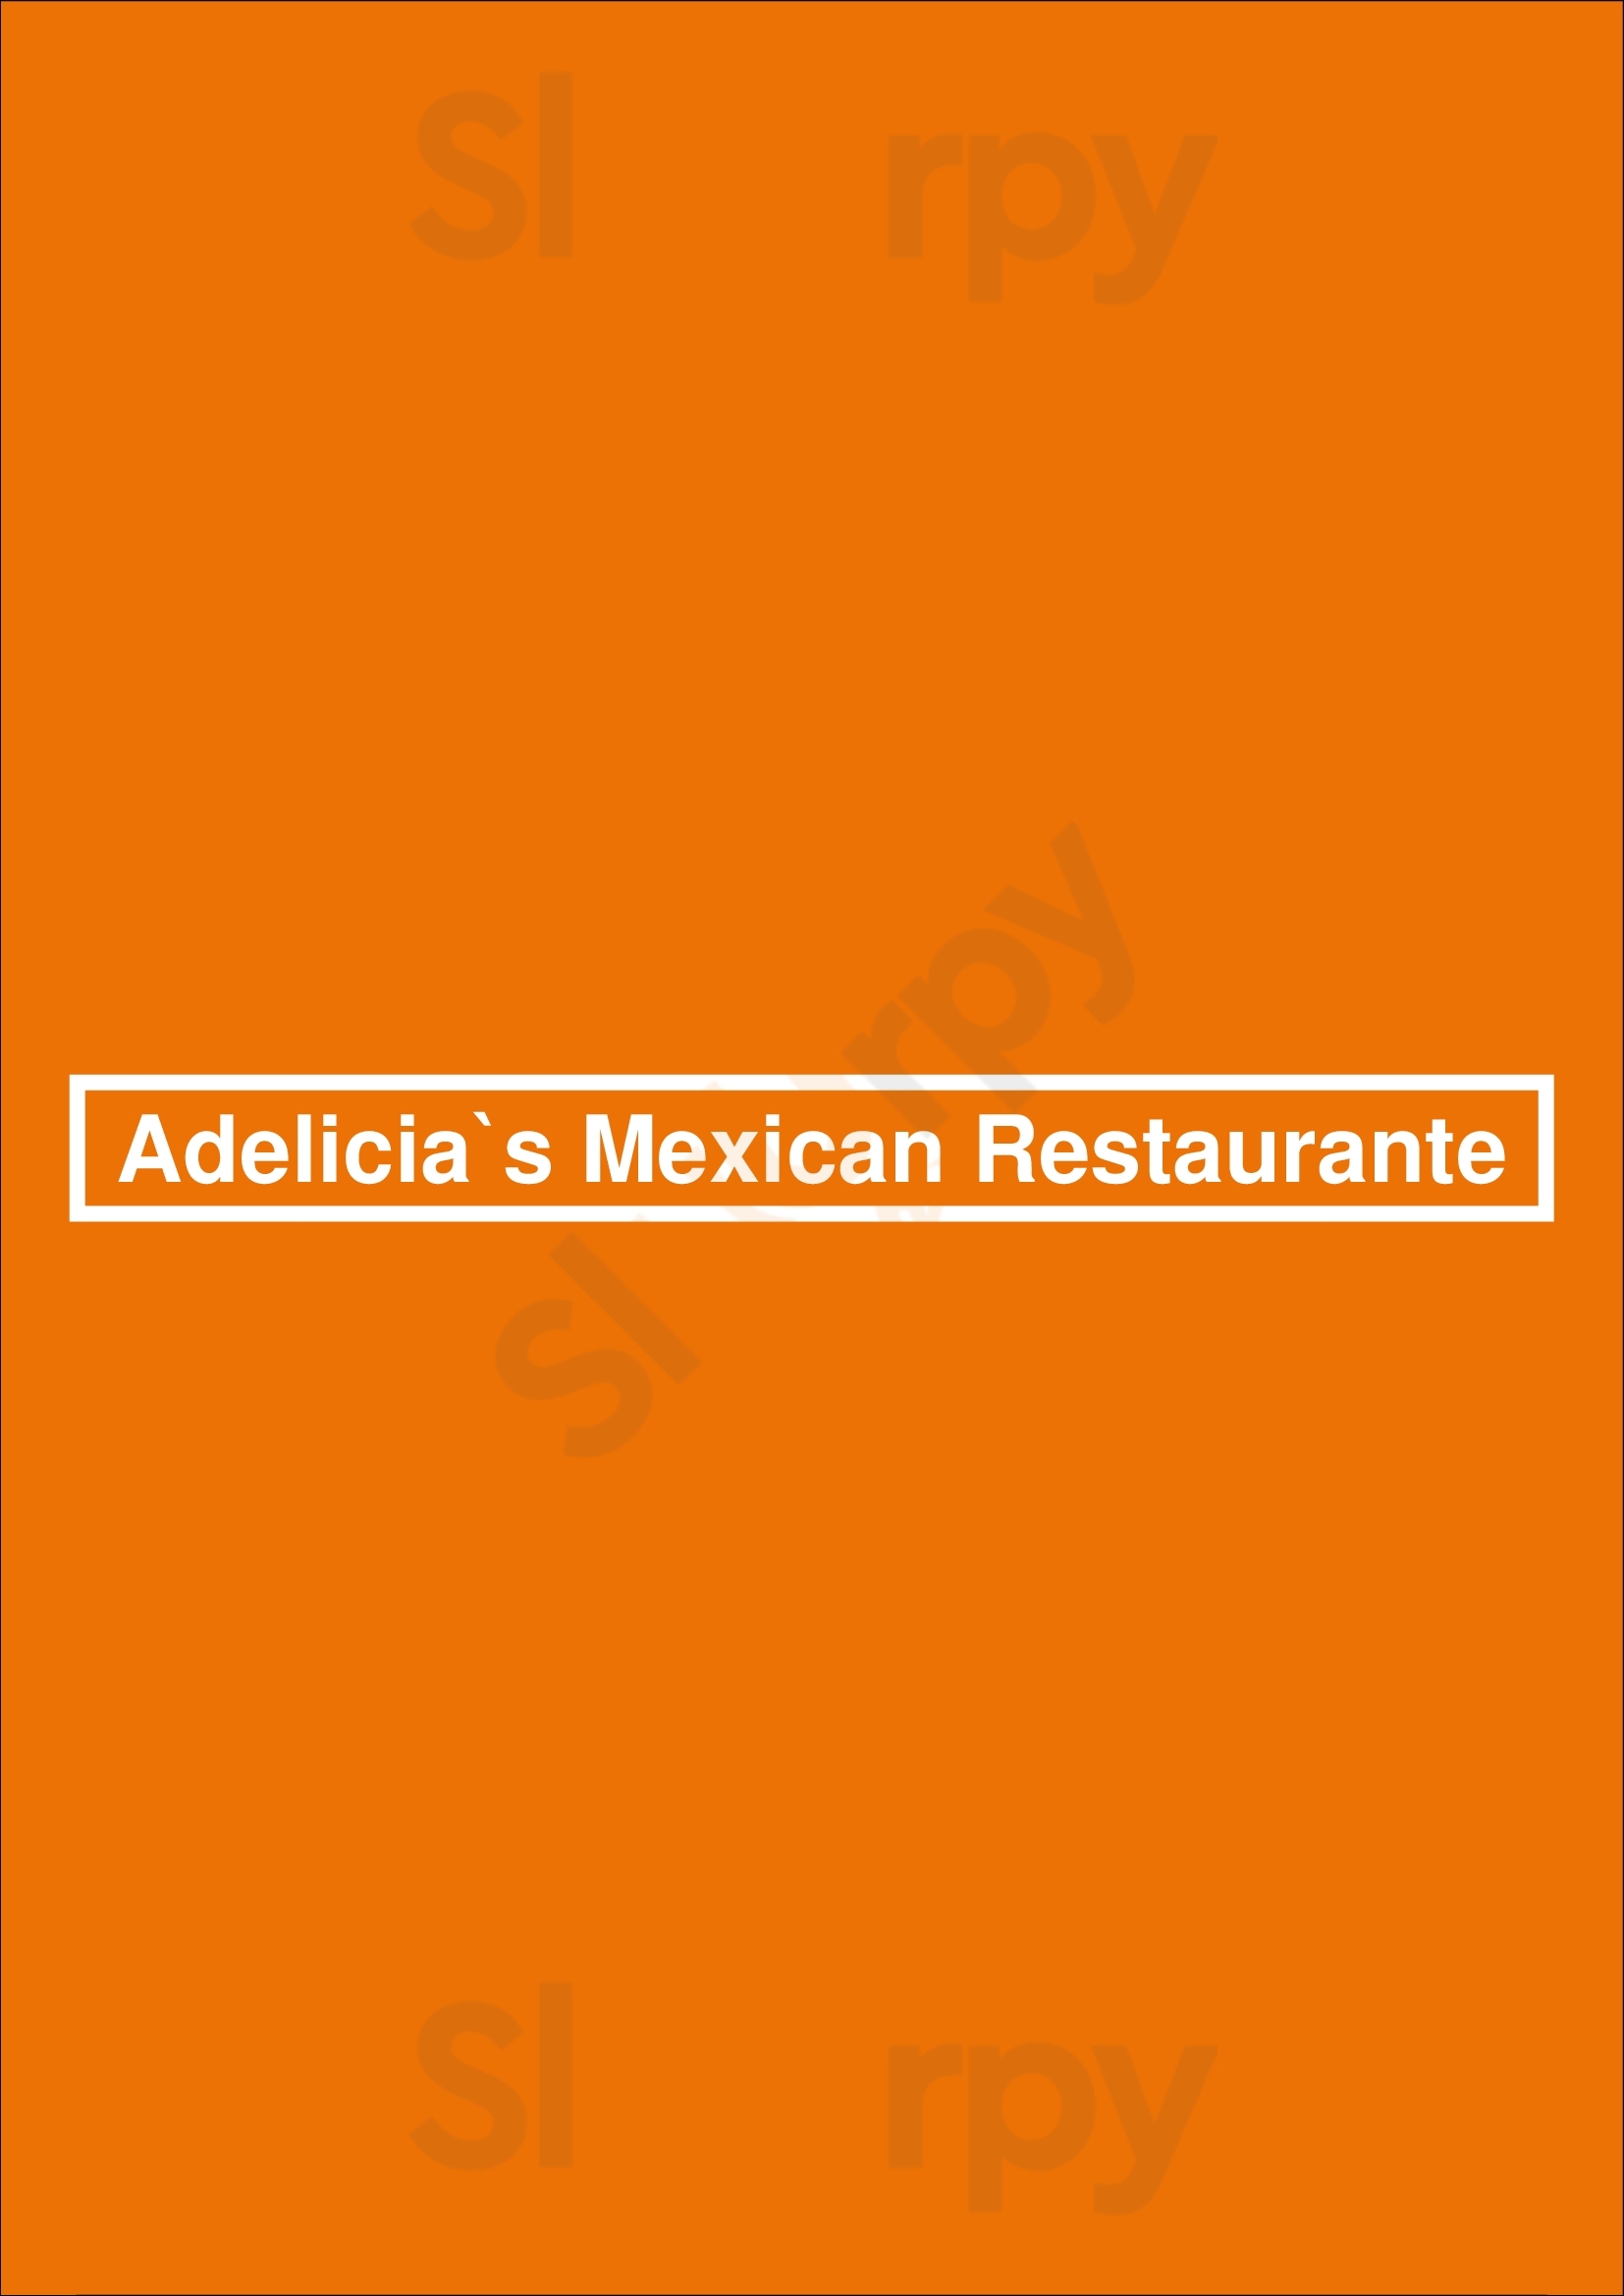 Adelicia`s Mexican Restaurante Langley Menu - 1